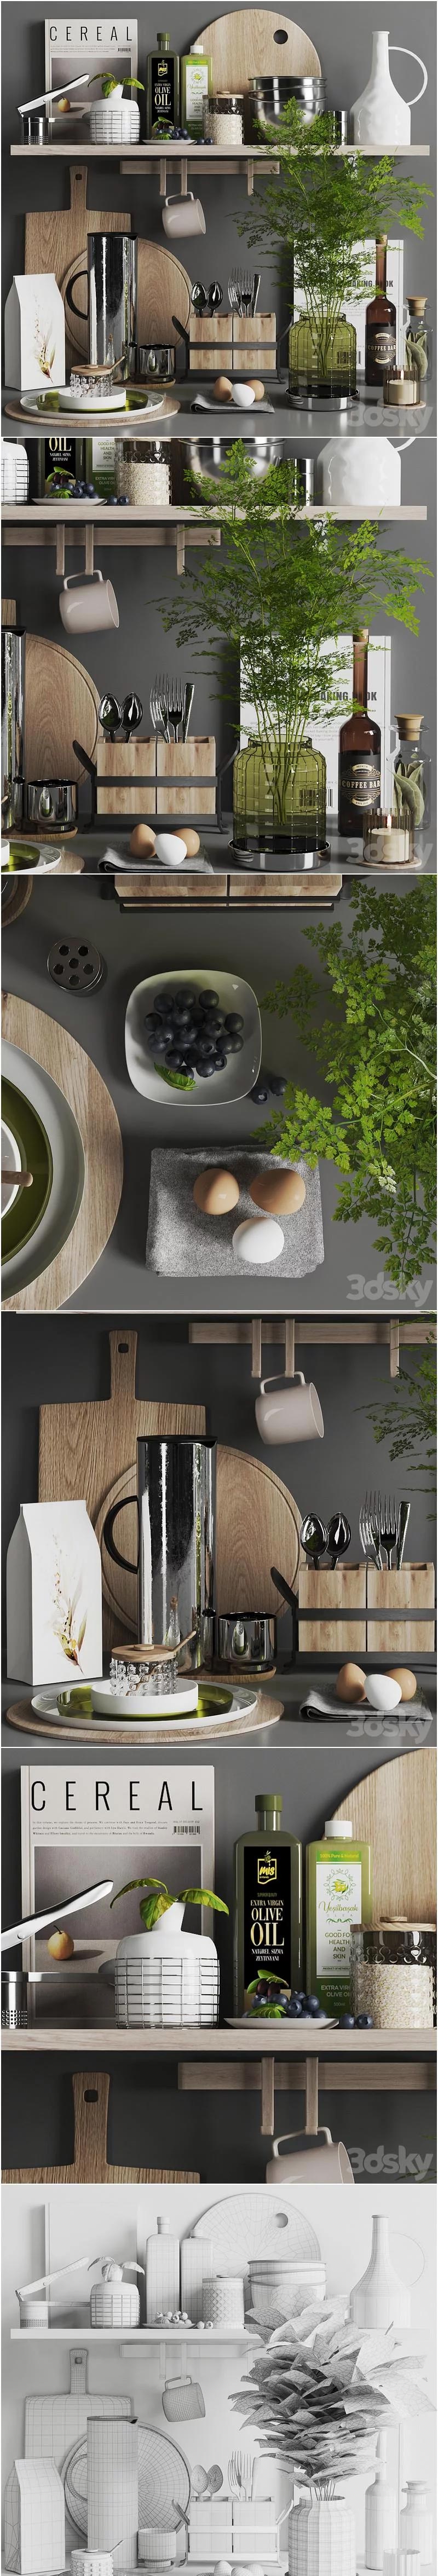 时尚高端多种厨房用品3D模型大集合-MAX | FBX | OBJ插图